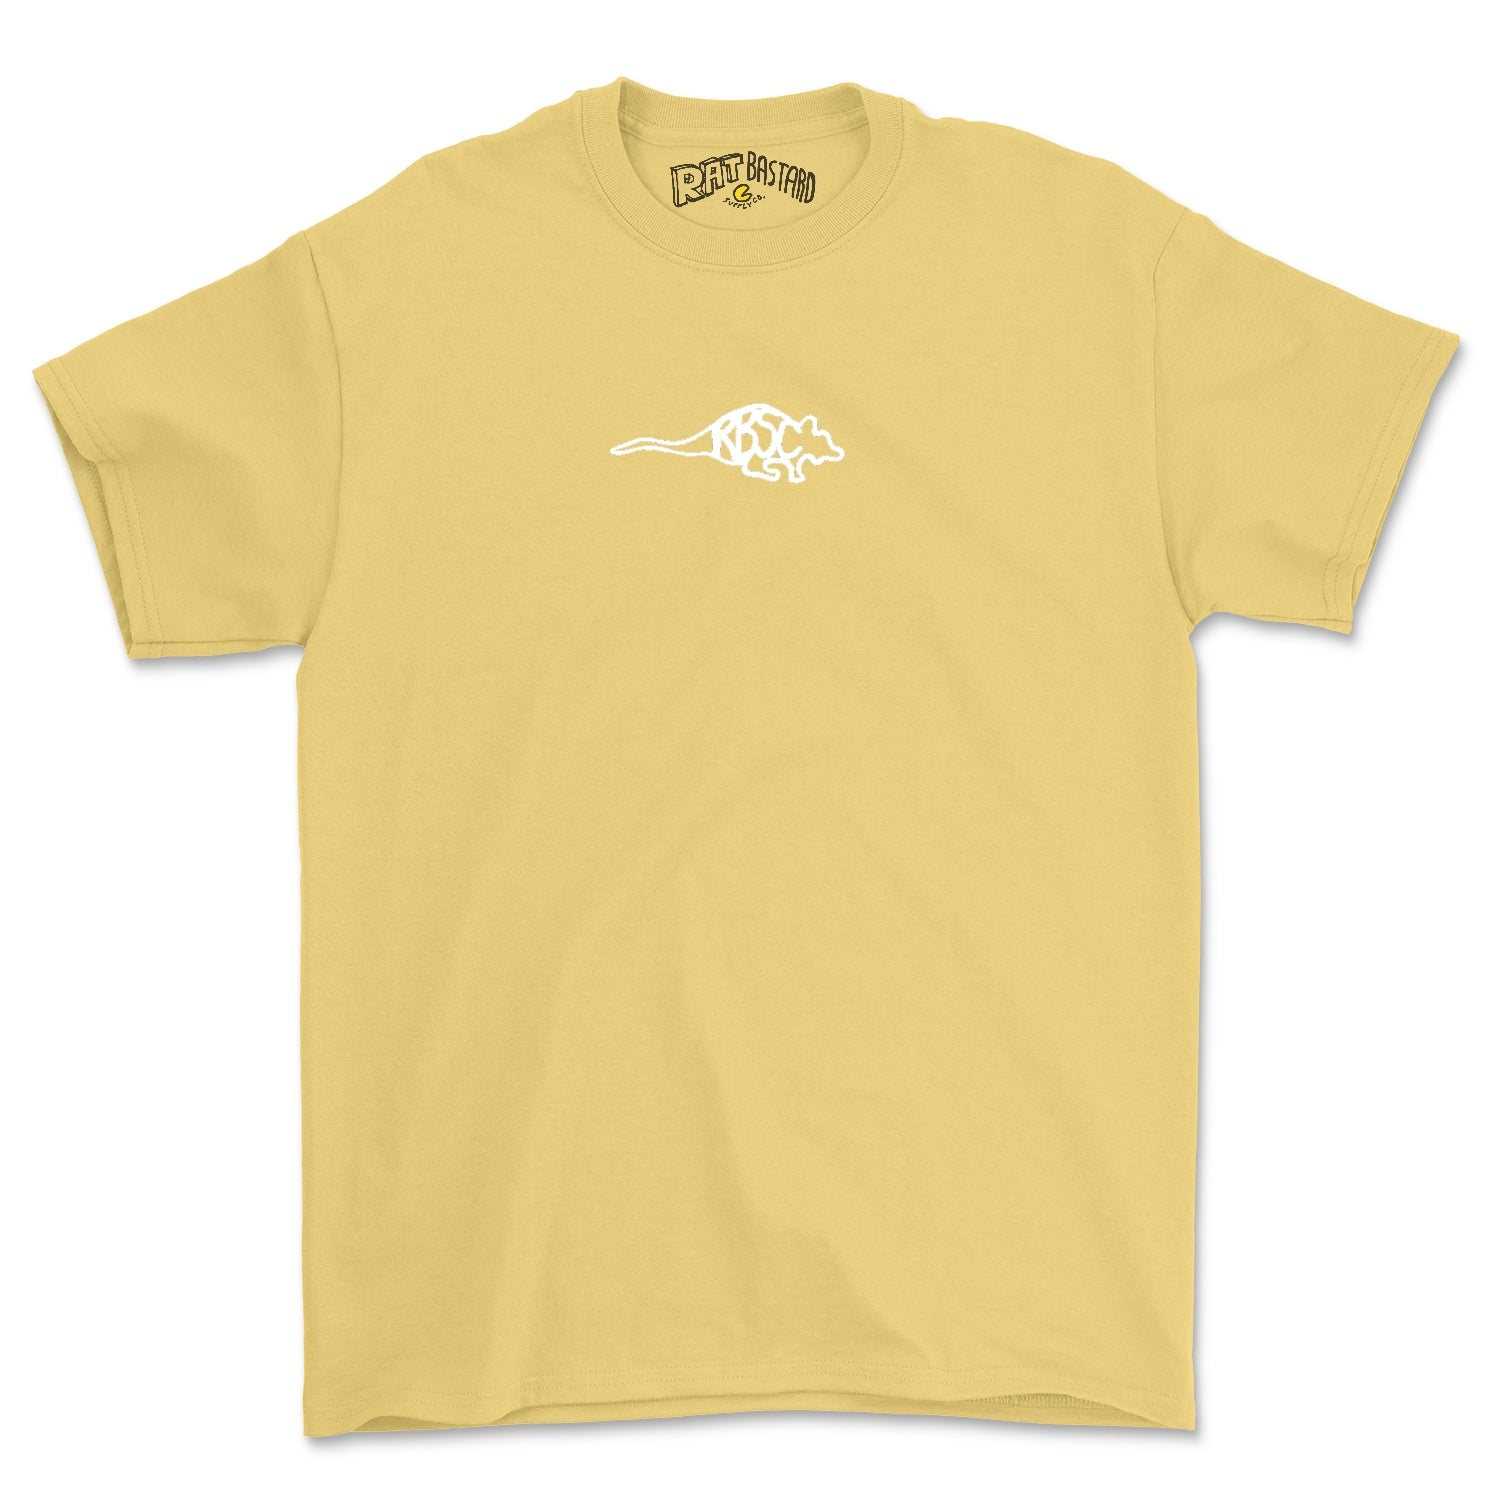 Ratstract Graphic Tee Shirt